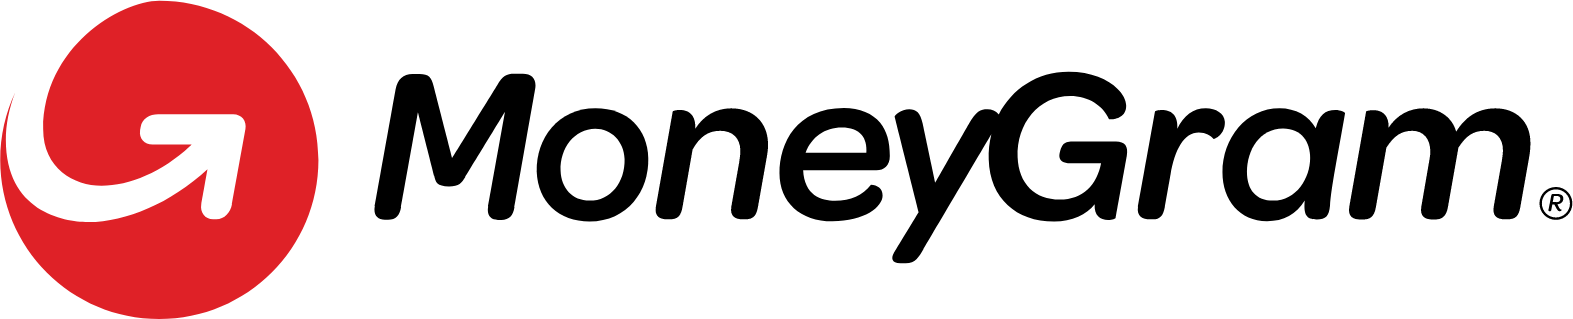 MoneyGram logo large (transparent PNG)